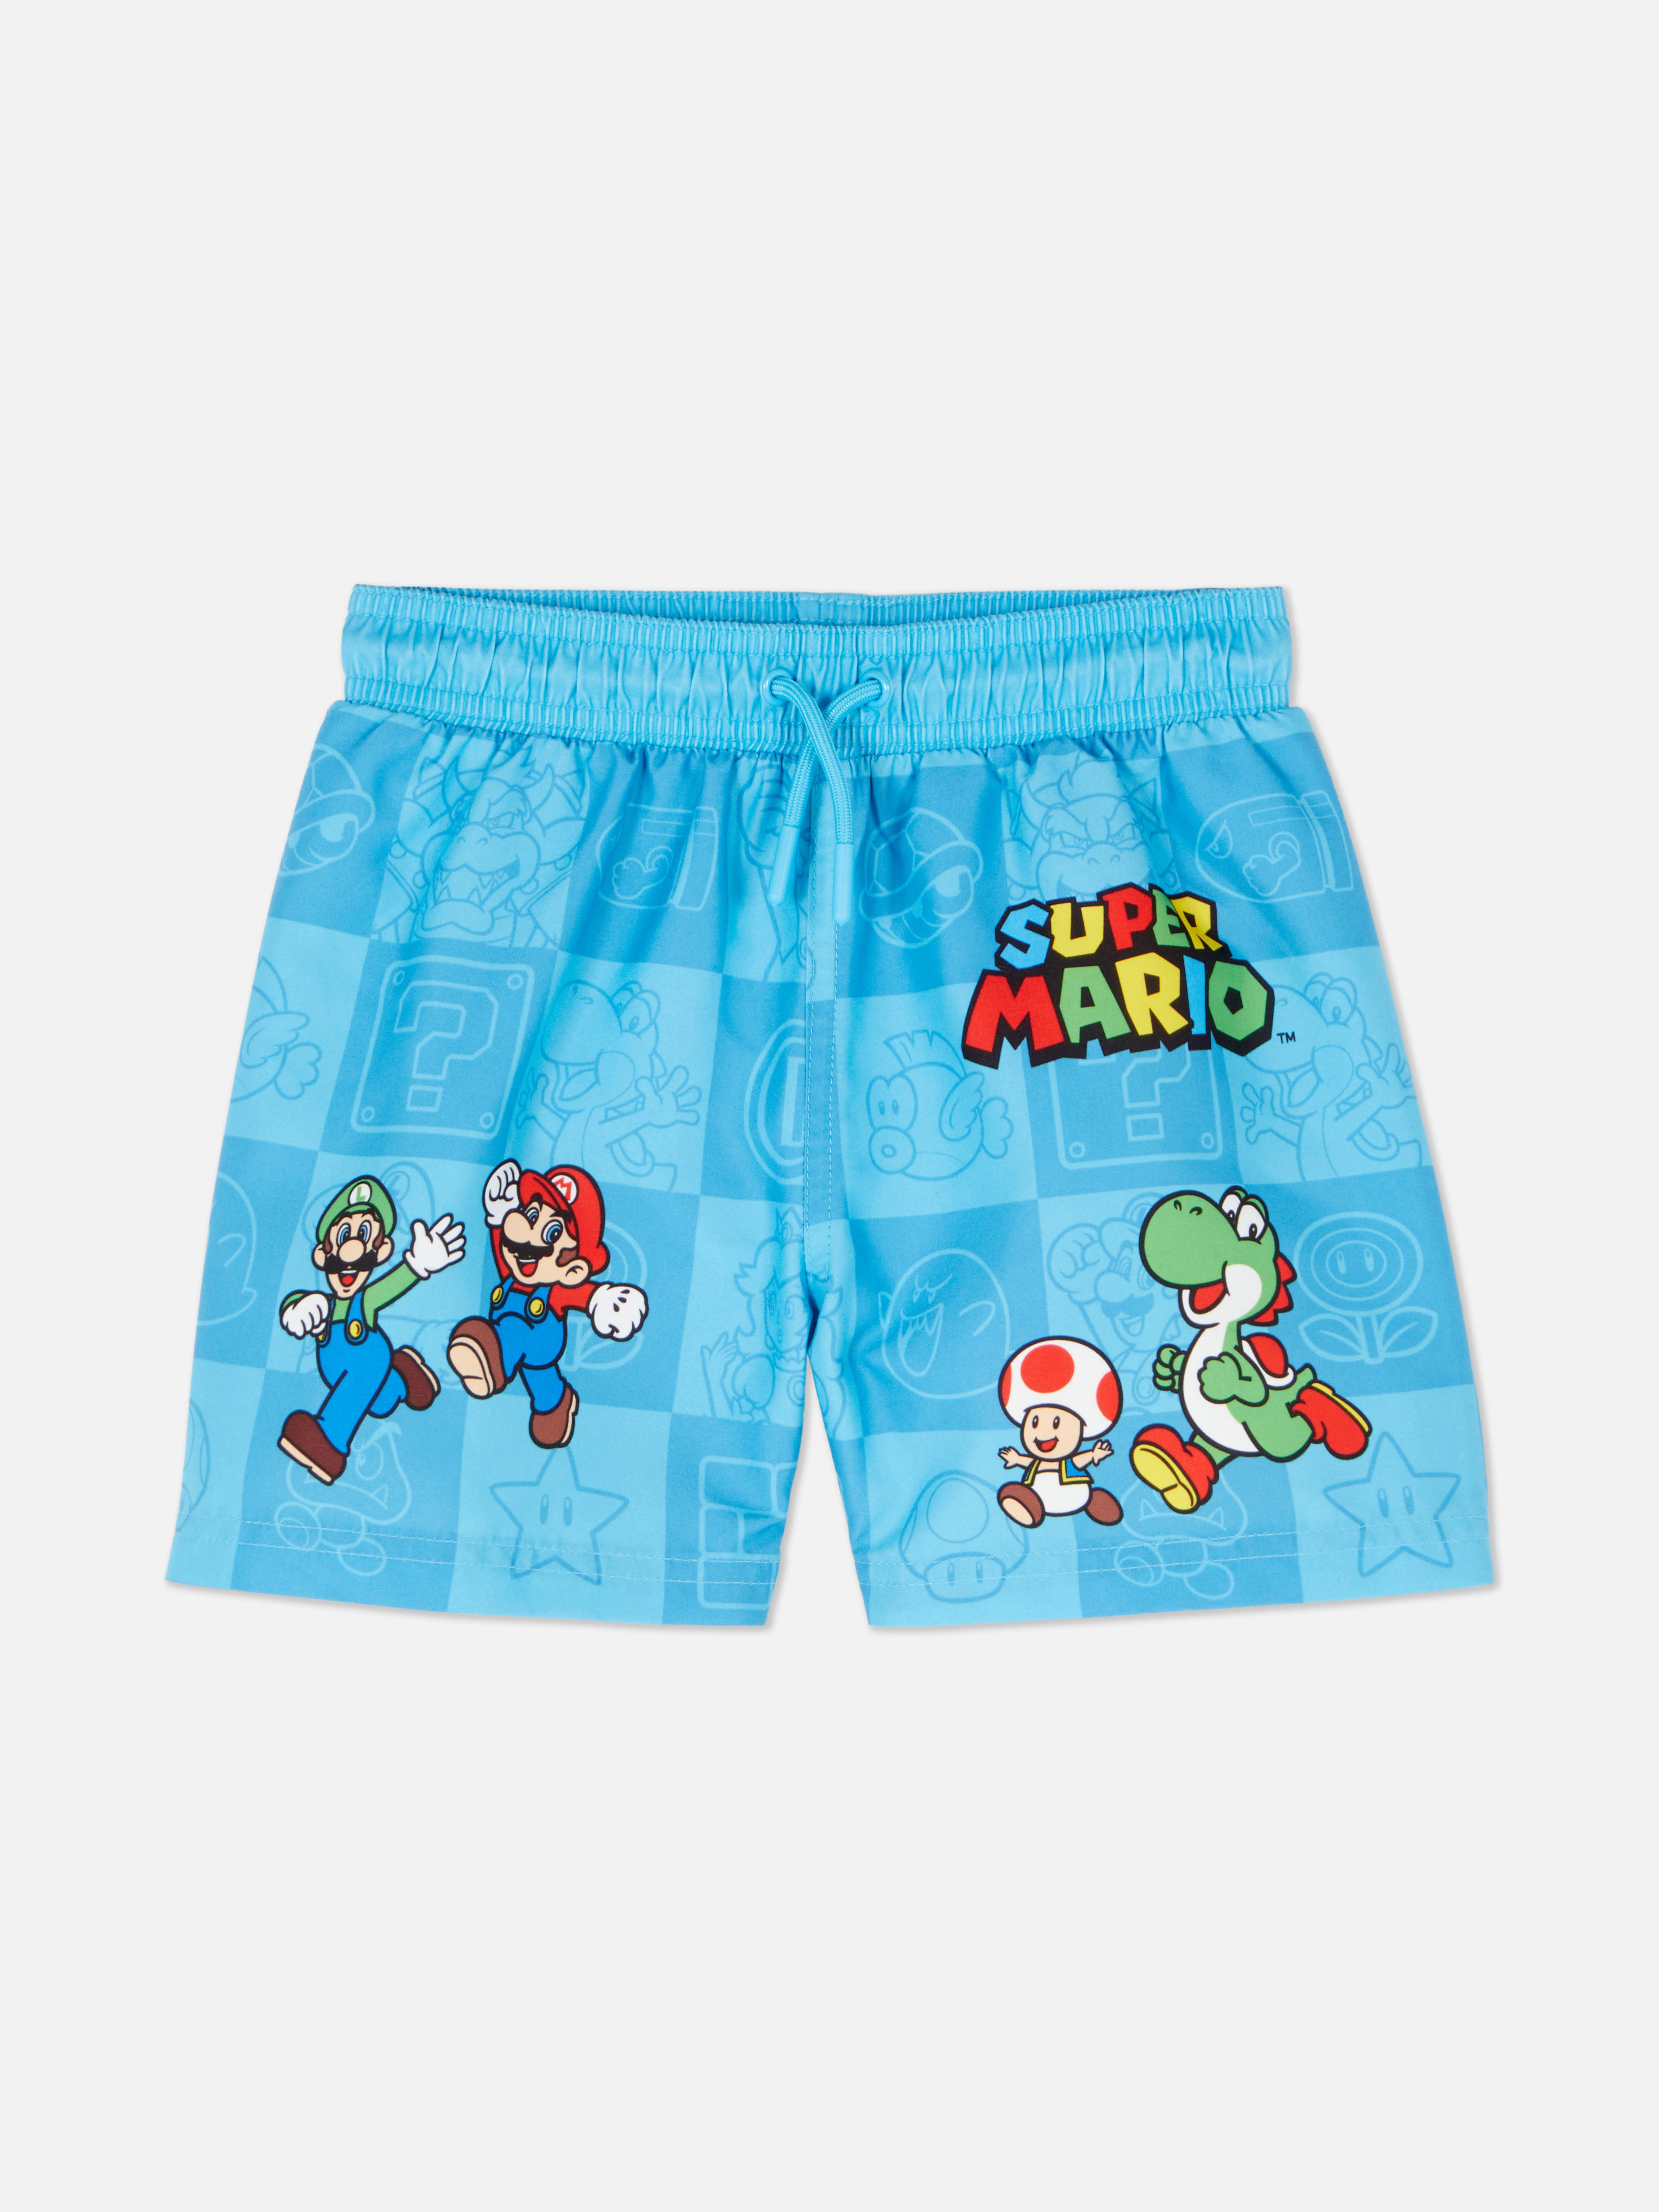 Šortky s postavičkami ze Super Mario World